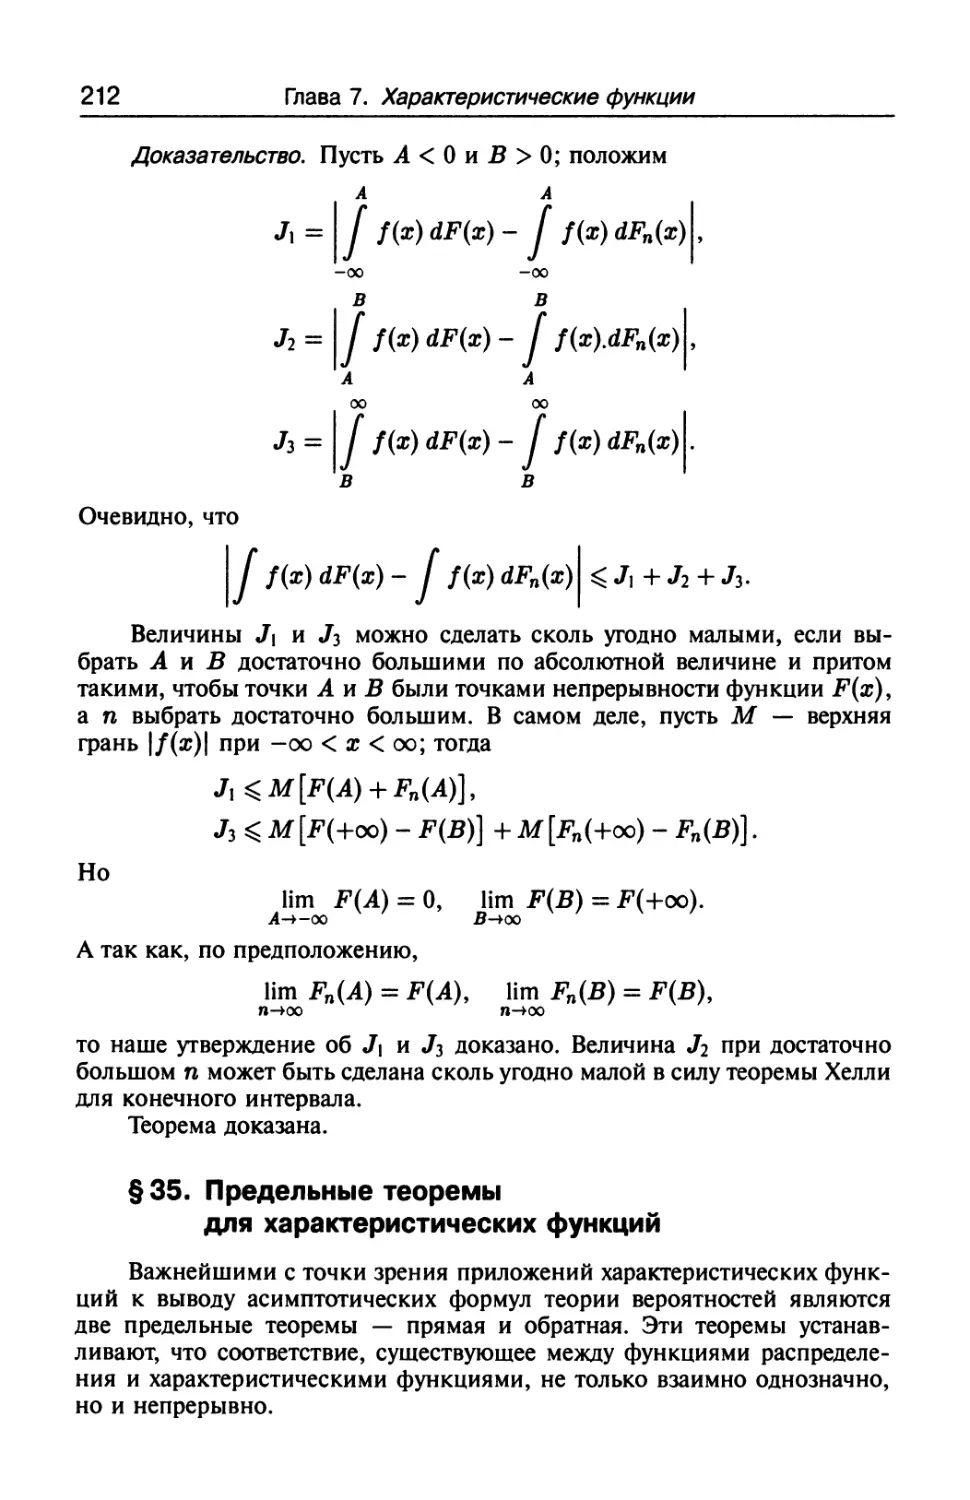 § 35. Предельные теоремы для характеристических функций